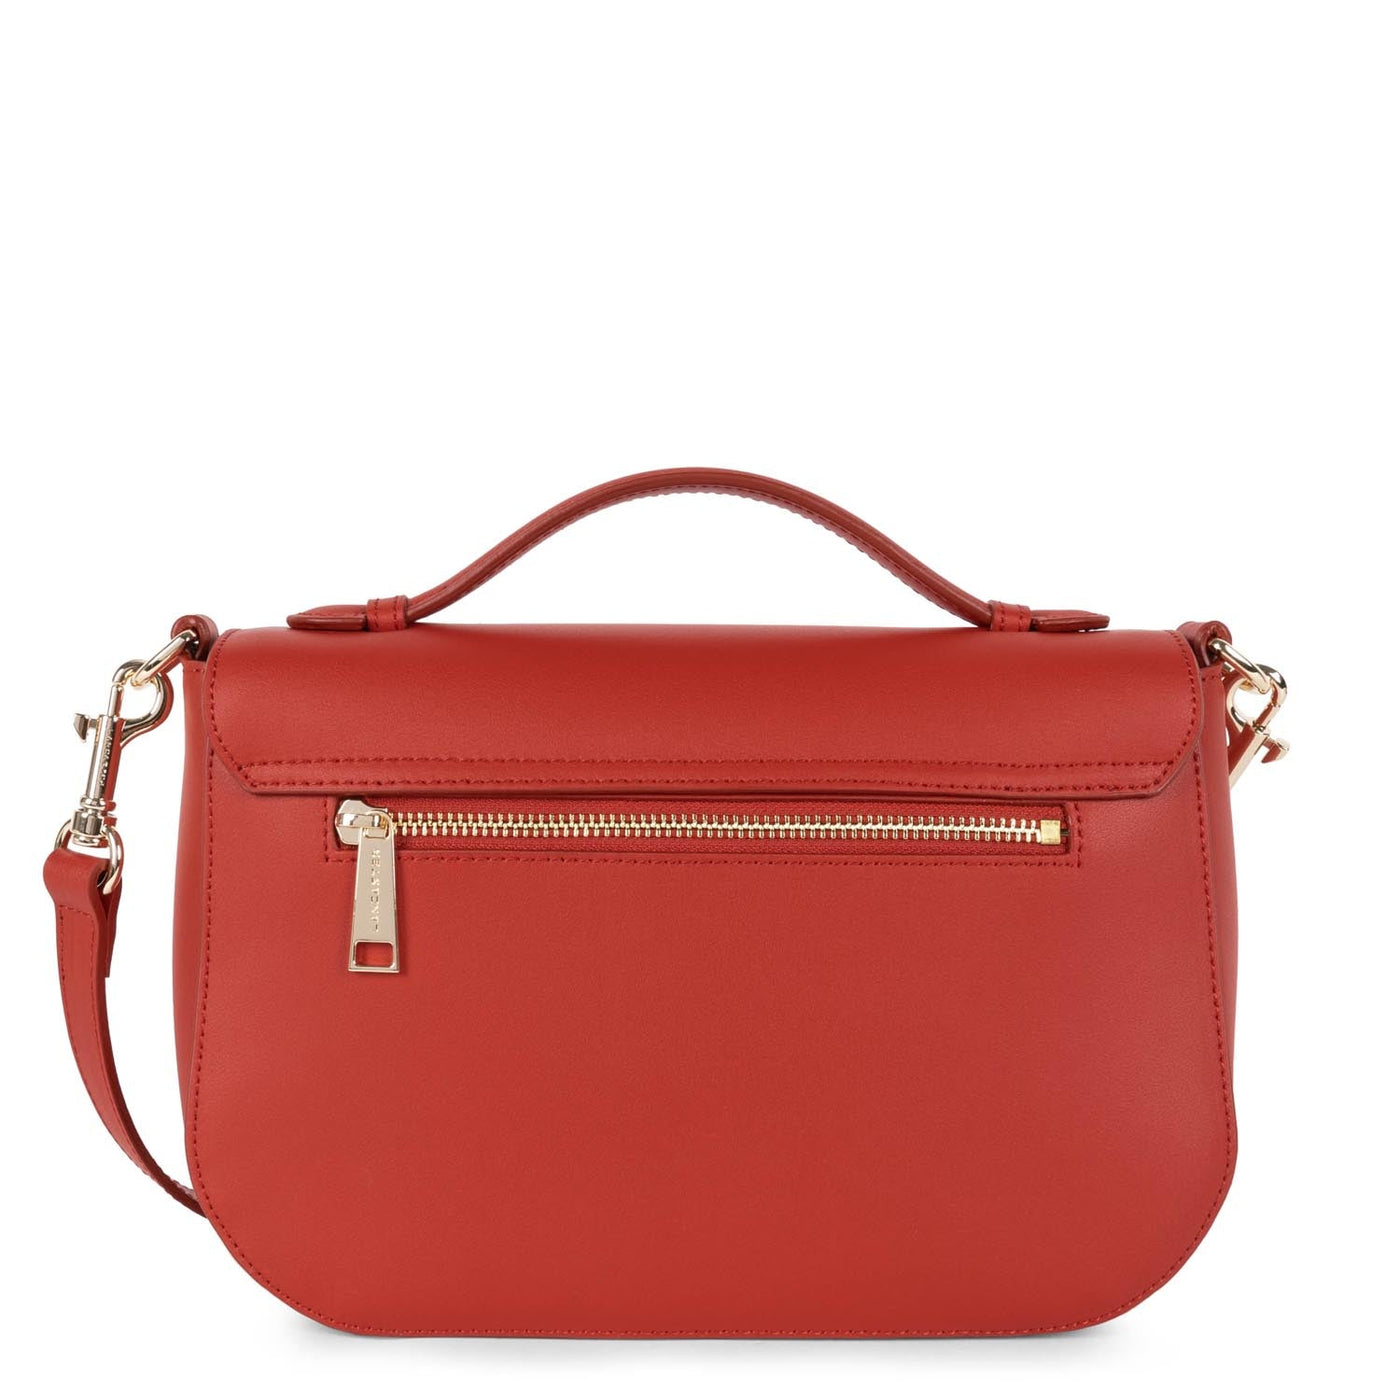 handbag - city philos #couleur_rouge